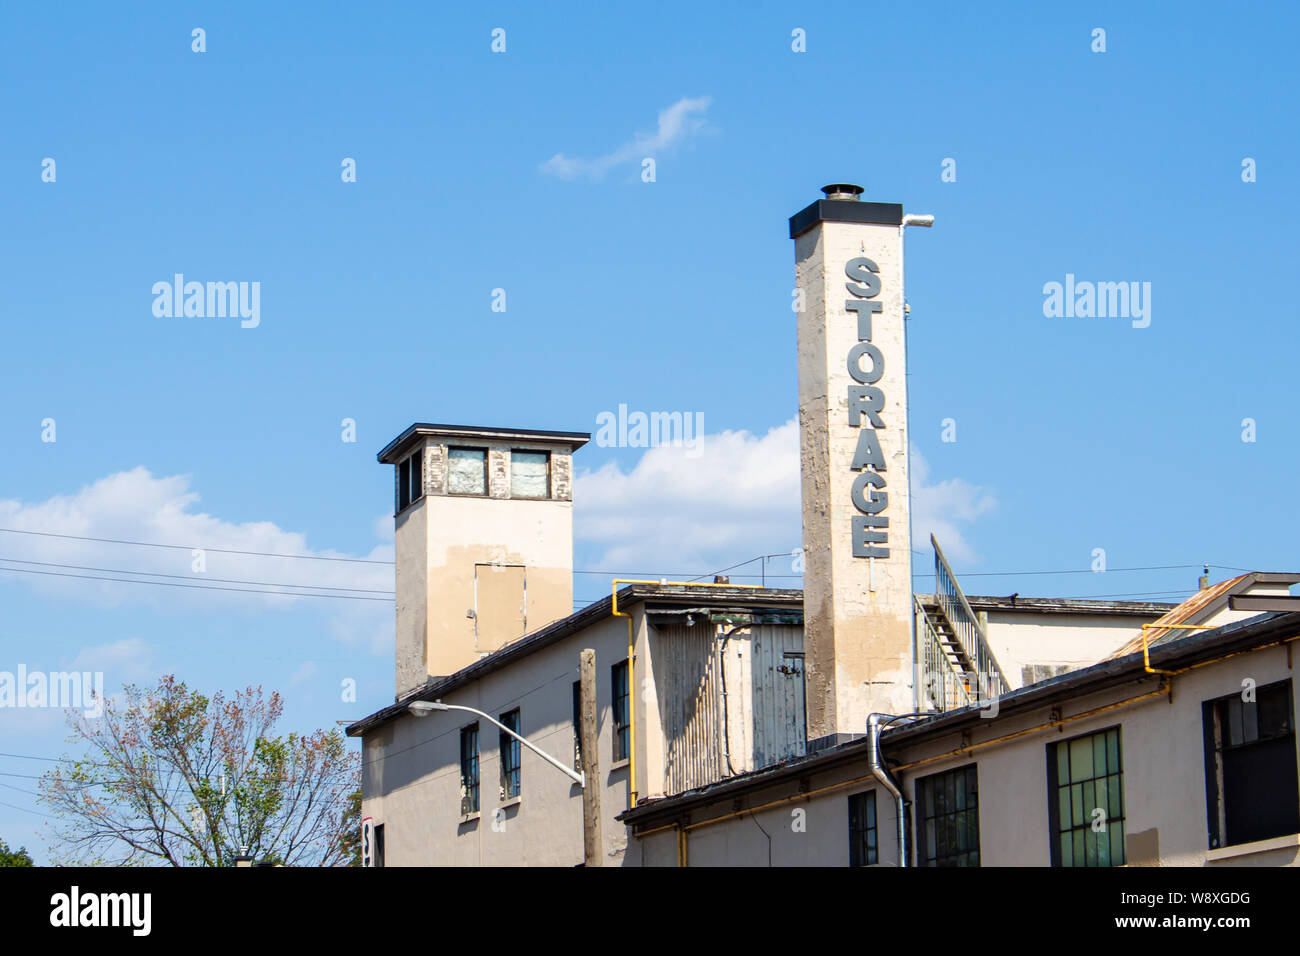 La parola 'Storage' è scritto nel blocco di scritte sul camino di un edificio di invecchiamento, di cui la metà superiore è visibile contro il cielo blu. Foto Stock